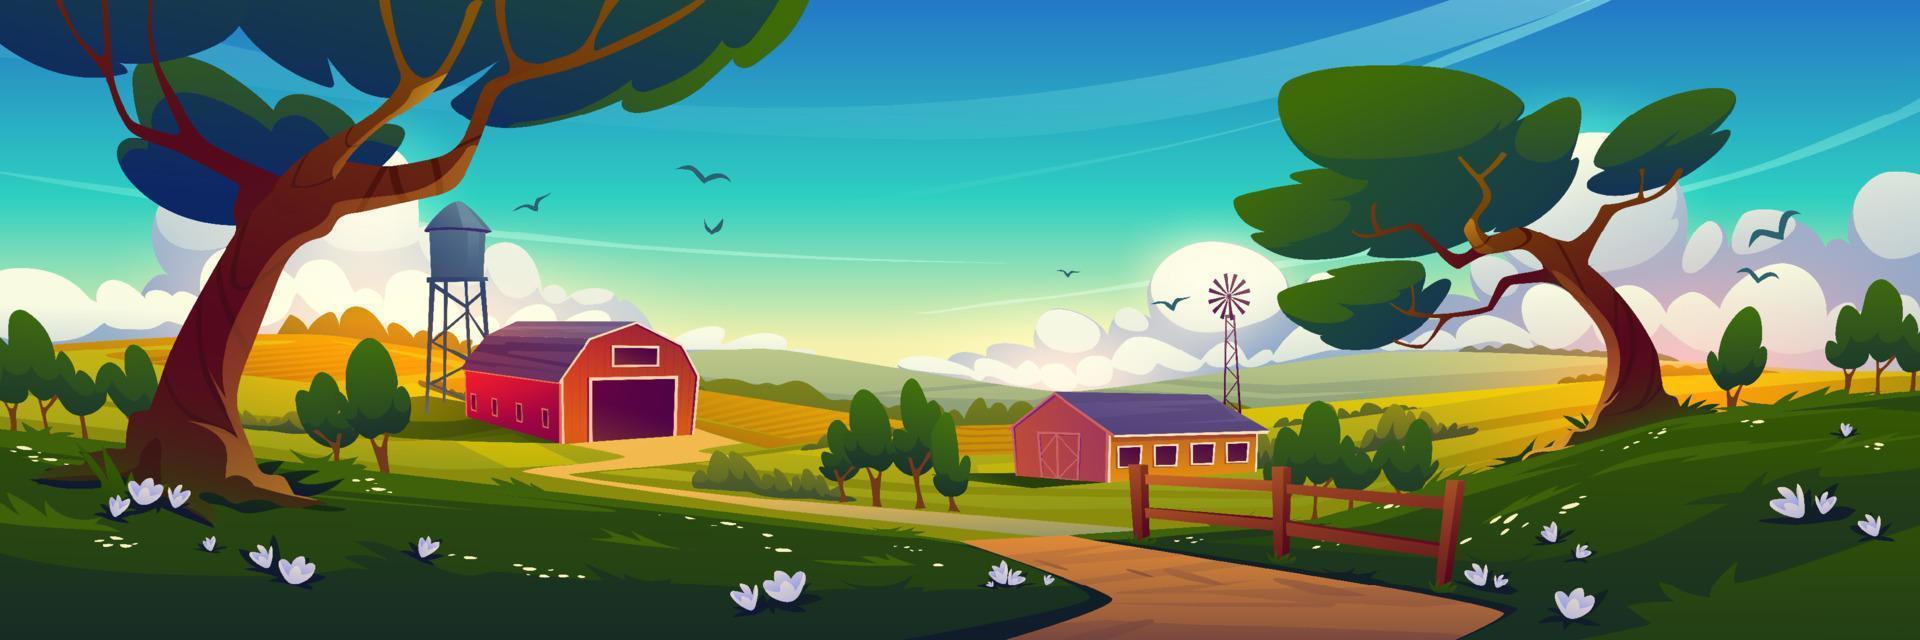 campo de verão com moinho de vento de celeiro de fazenda vetor